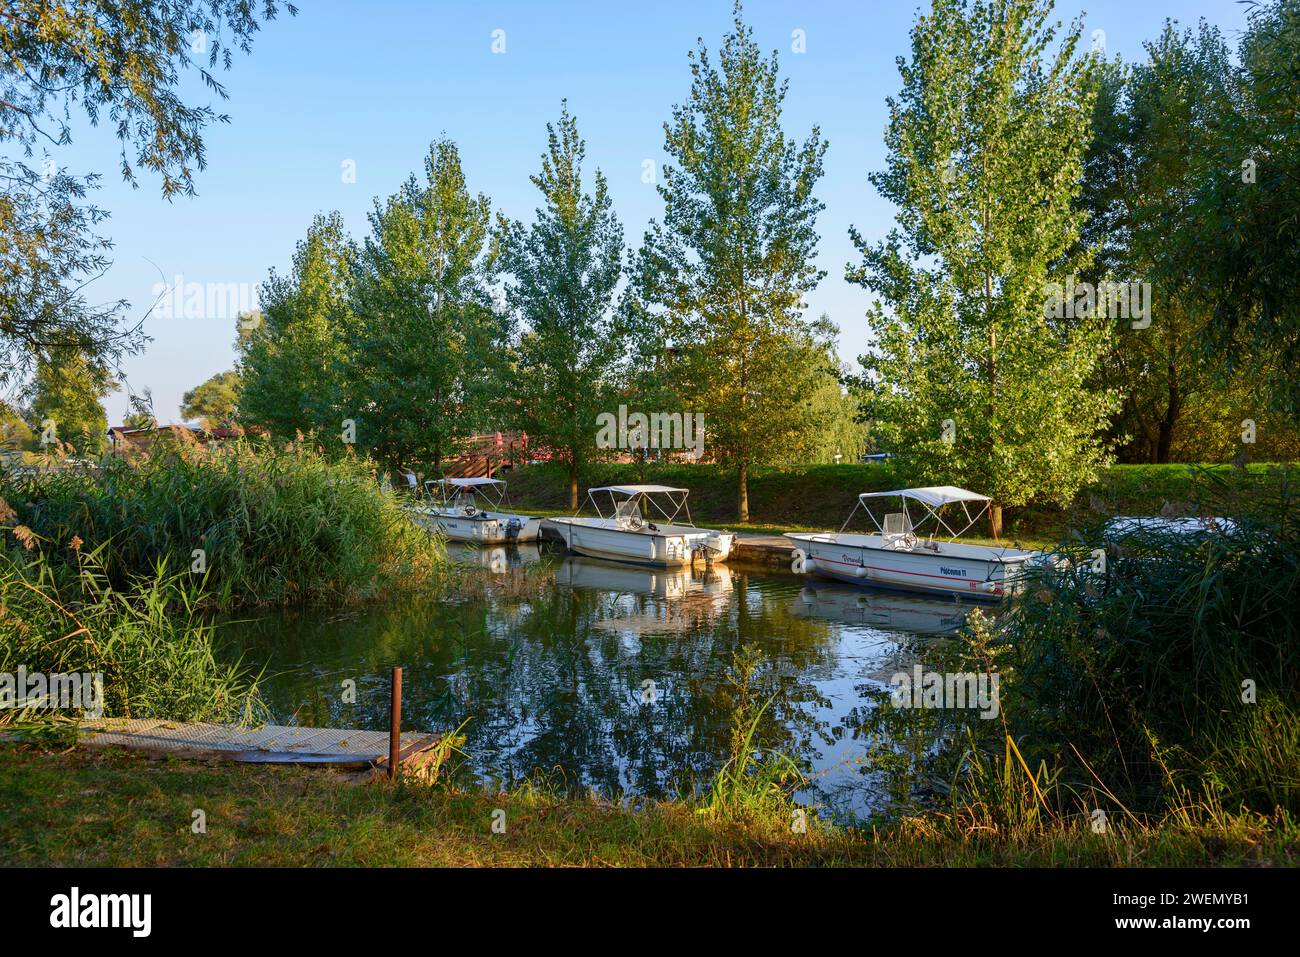 Die Szene zeigt Boote auf einem ruhigen Fluss umgeben von Bäumen im warmen Abendlicht, Marina, Batuv kanal, Bata Canal, Skalica, Skalica, Trnavsky kraj Stockfoto